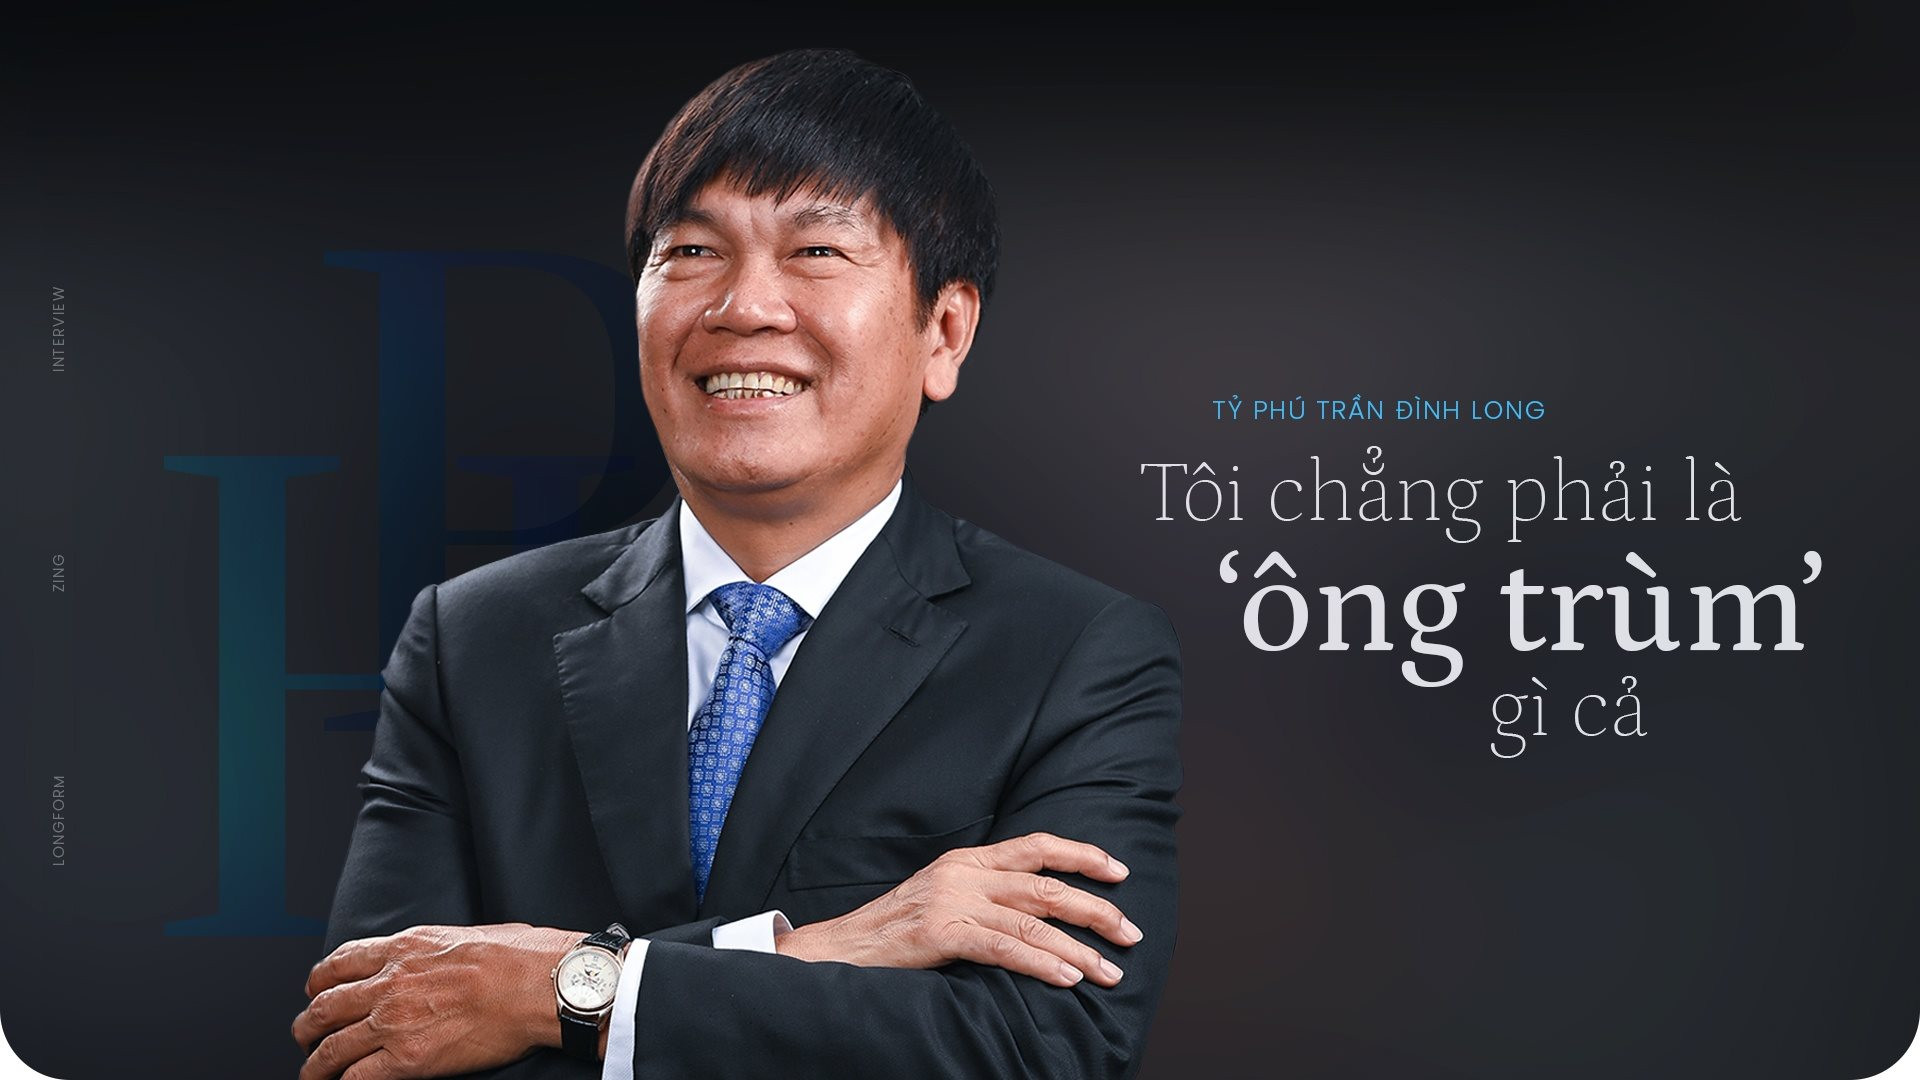 Giữa lúc hàng loạt DN bất động sản “chùn tay” do khát vốn, Vua thép Trần Đình Long ung dung trở thành nhà đầu tư duy nhất của những DA hàng nghìn tỷ đồng - Ảnh 1.